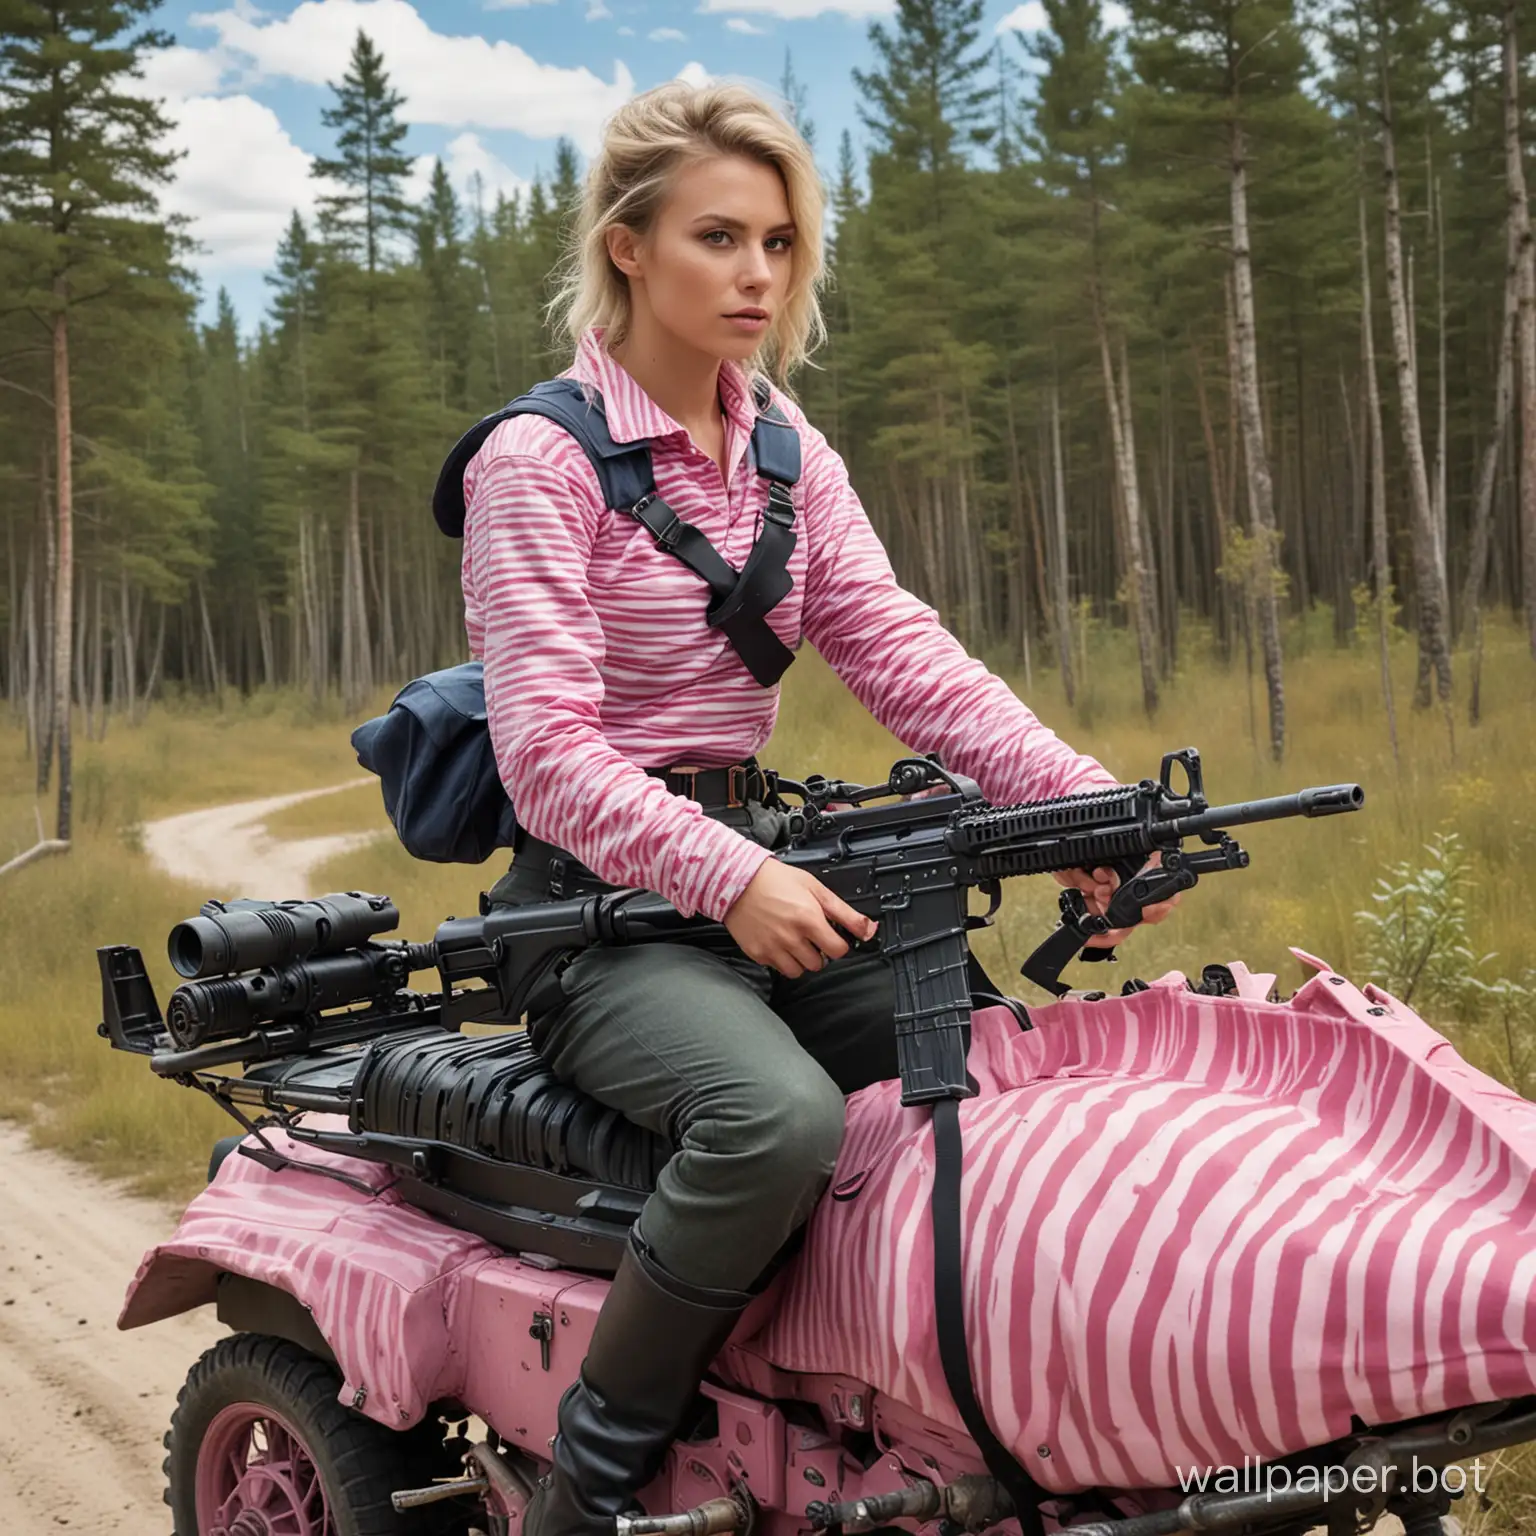 Sailor-Riding-Pink-Zebra-with-Machine-Gun-in-Taiga-Wilderness